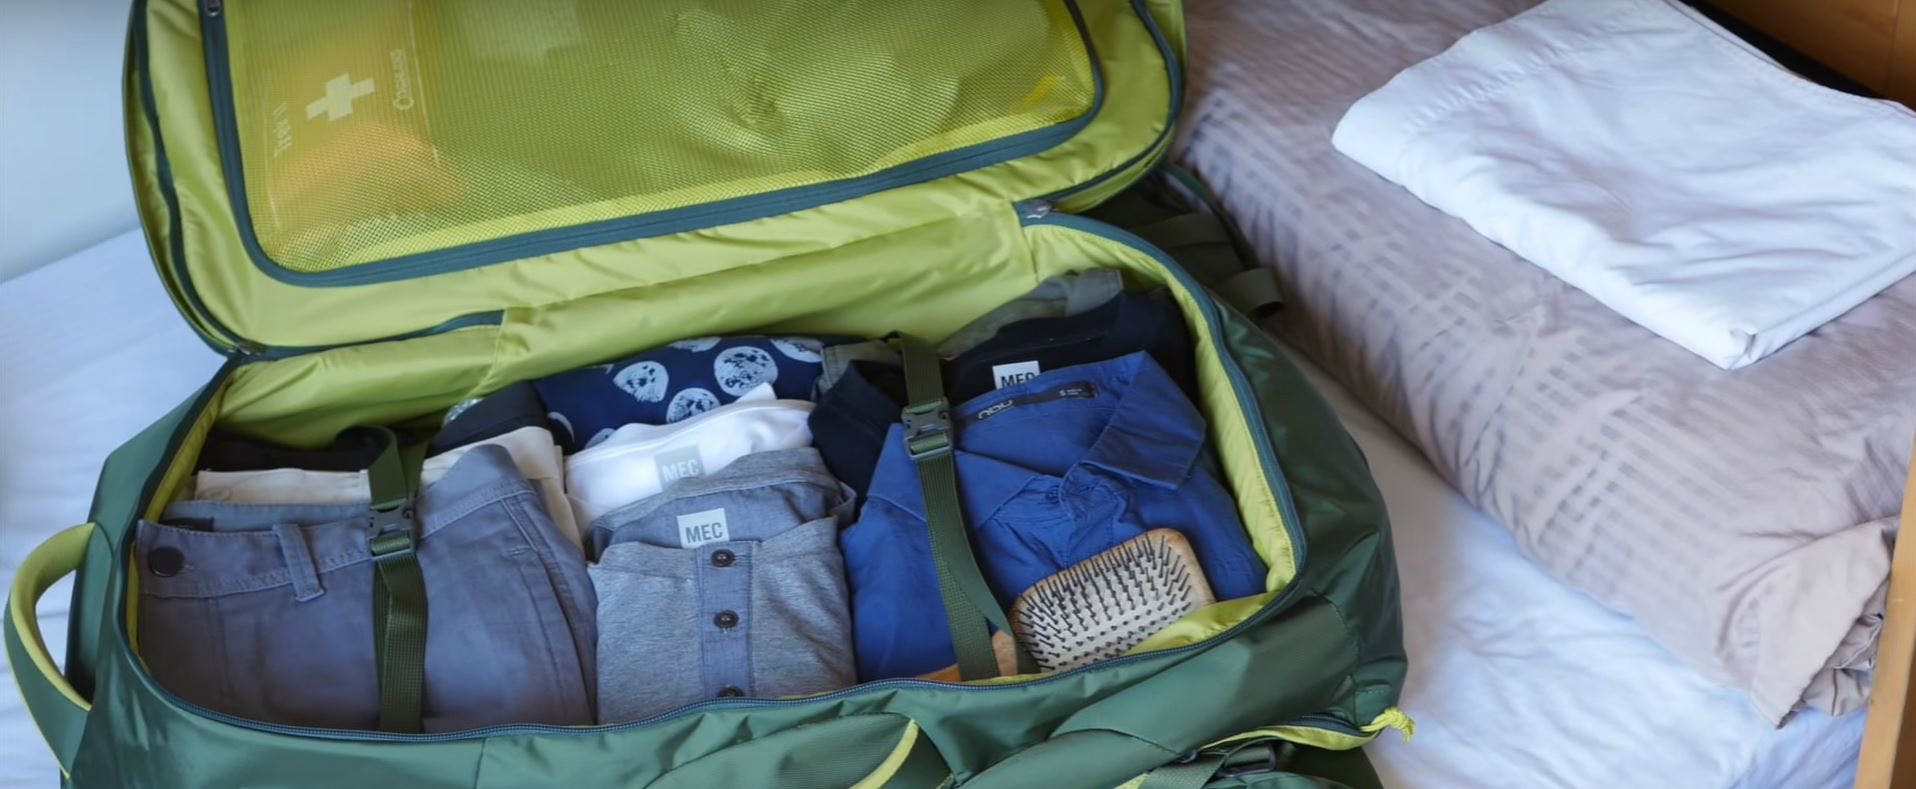 Vocabulaire et article: Check-list des indispensables pour un voyage en sac  à dos